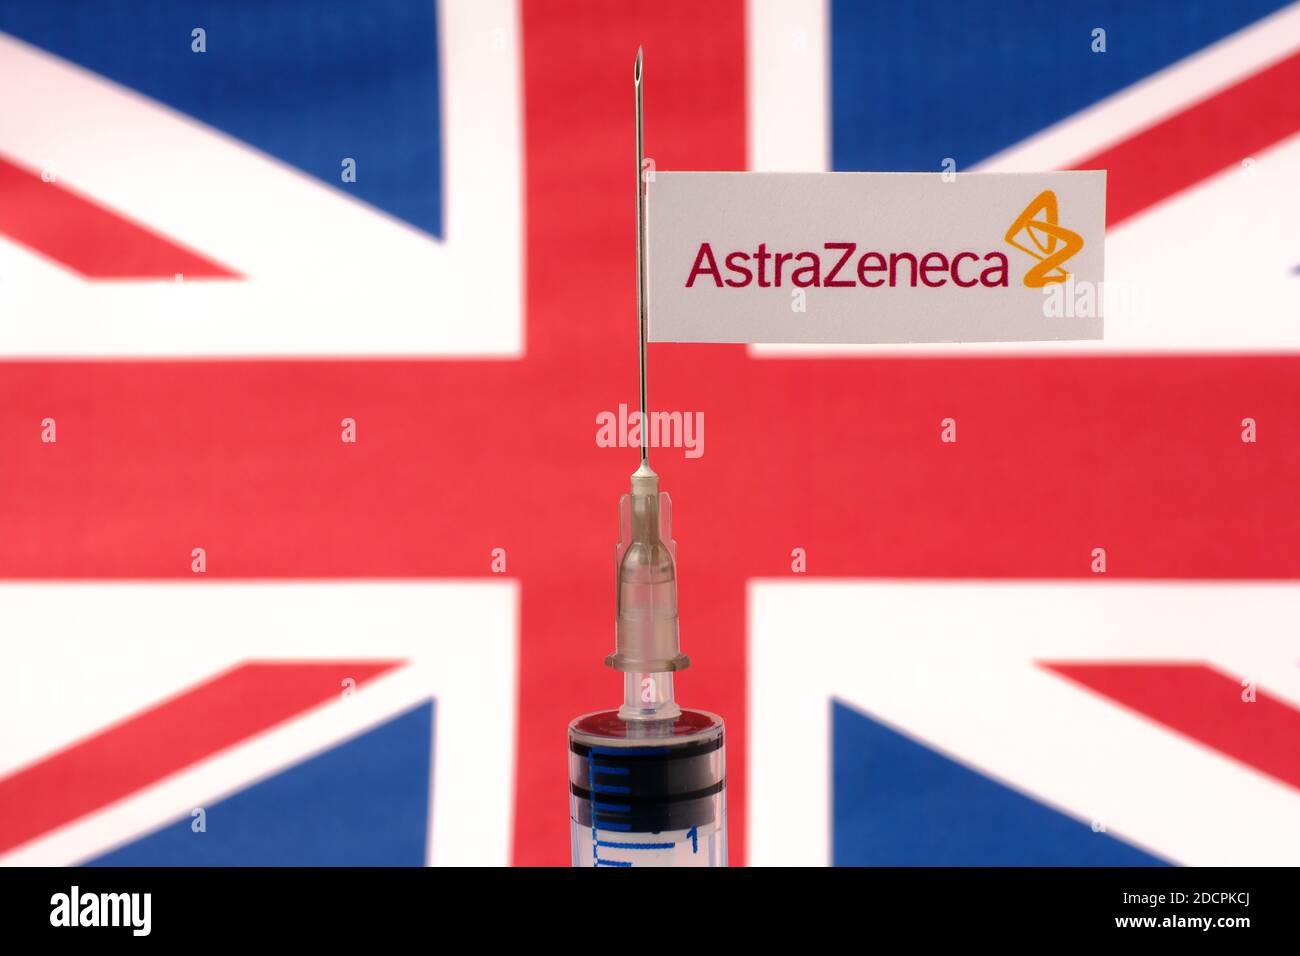 Stafford / Regno Unito - Novembre 22 2020: AstraZeneca Oxford Vaccine Covid-19 Concept. Ago della siringa e adesivo su di esso, bandiera UK offuscata sulla ba Foto Stock